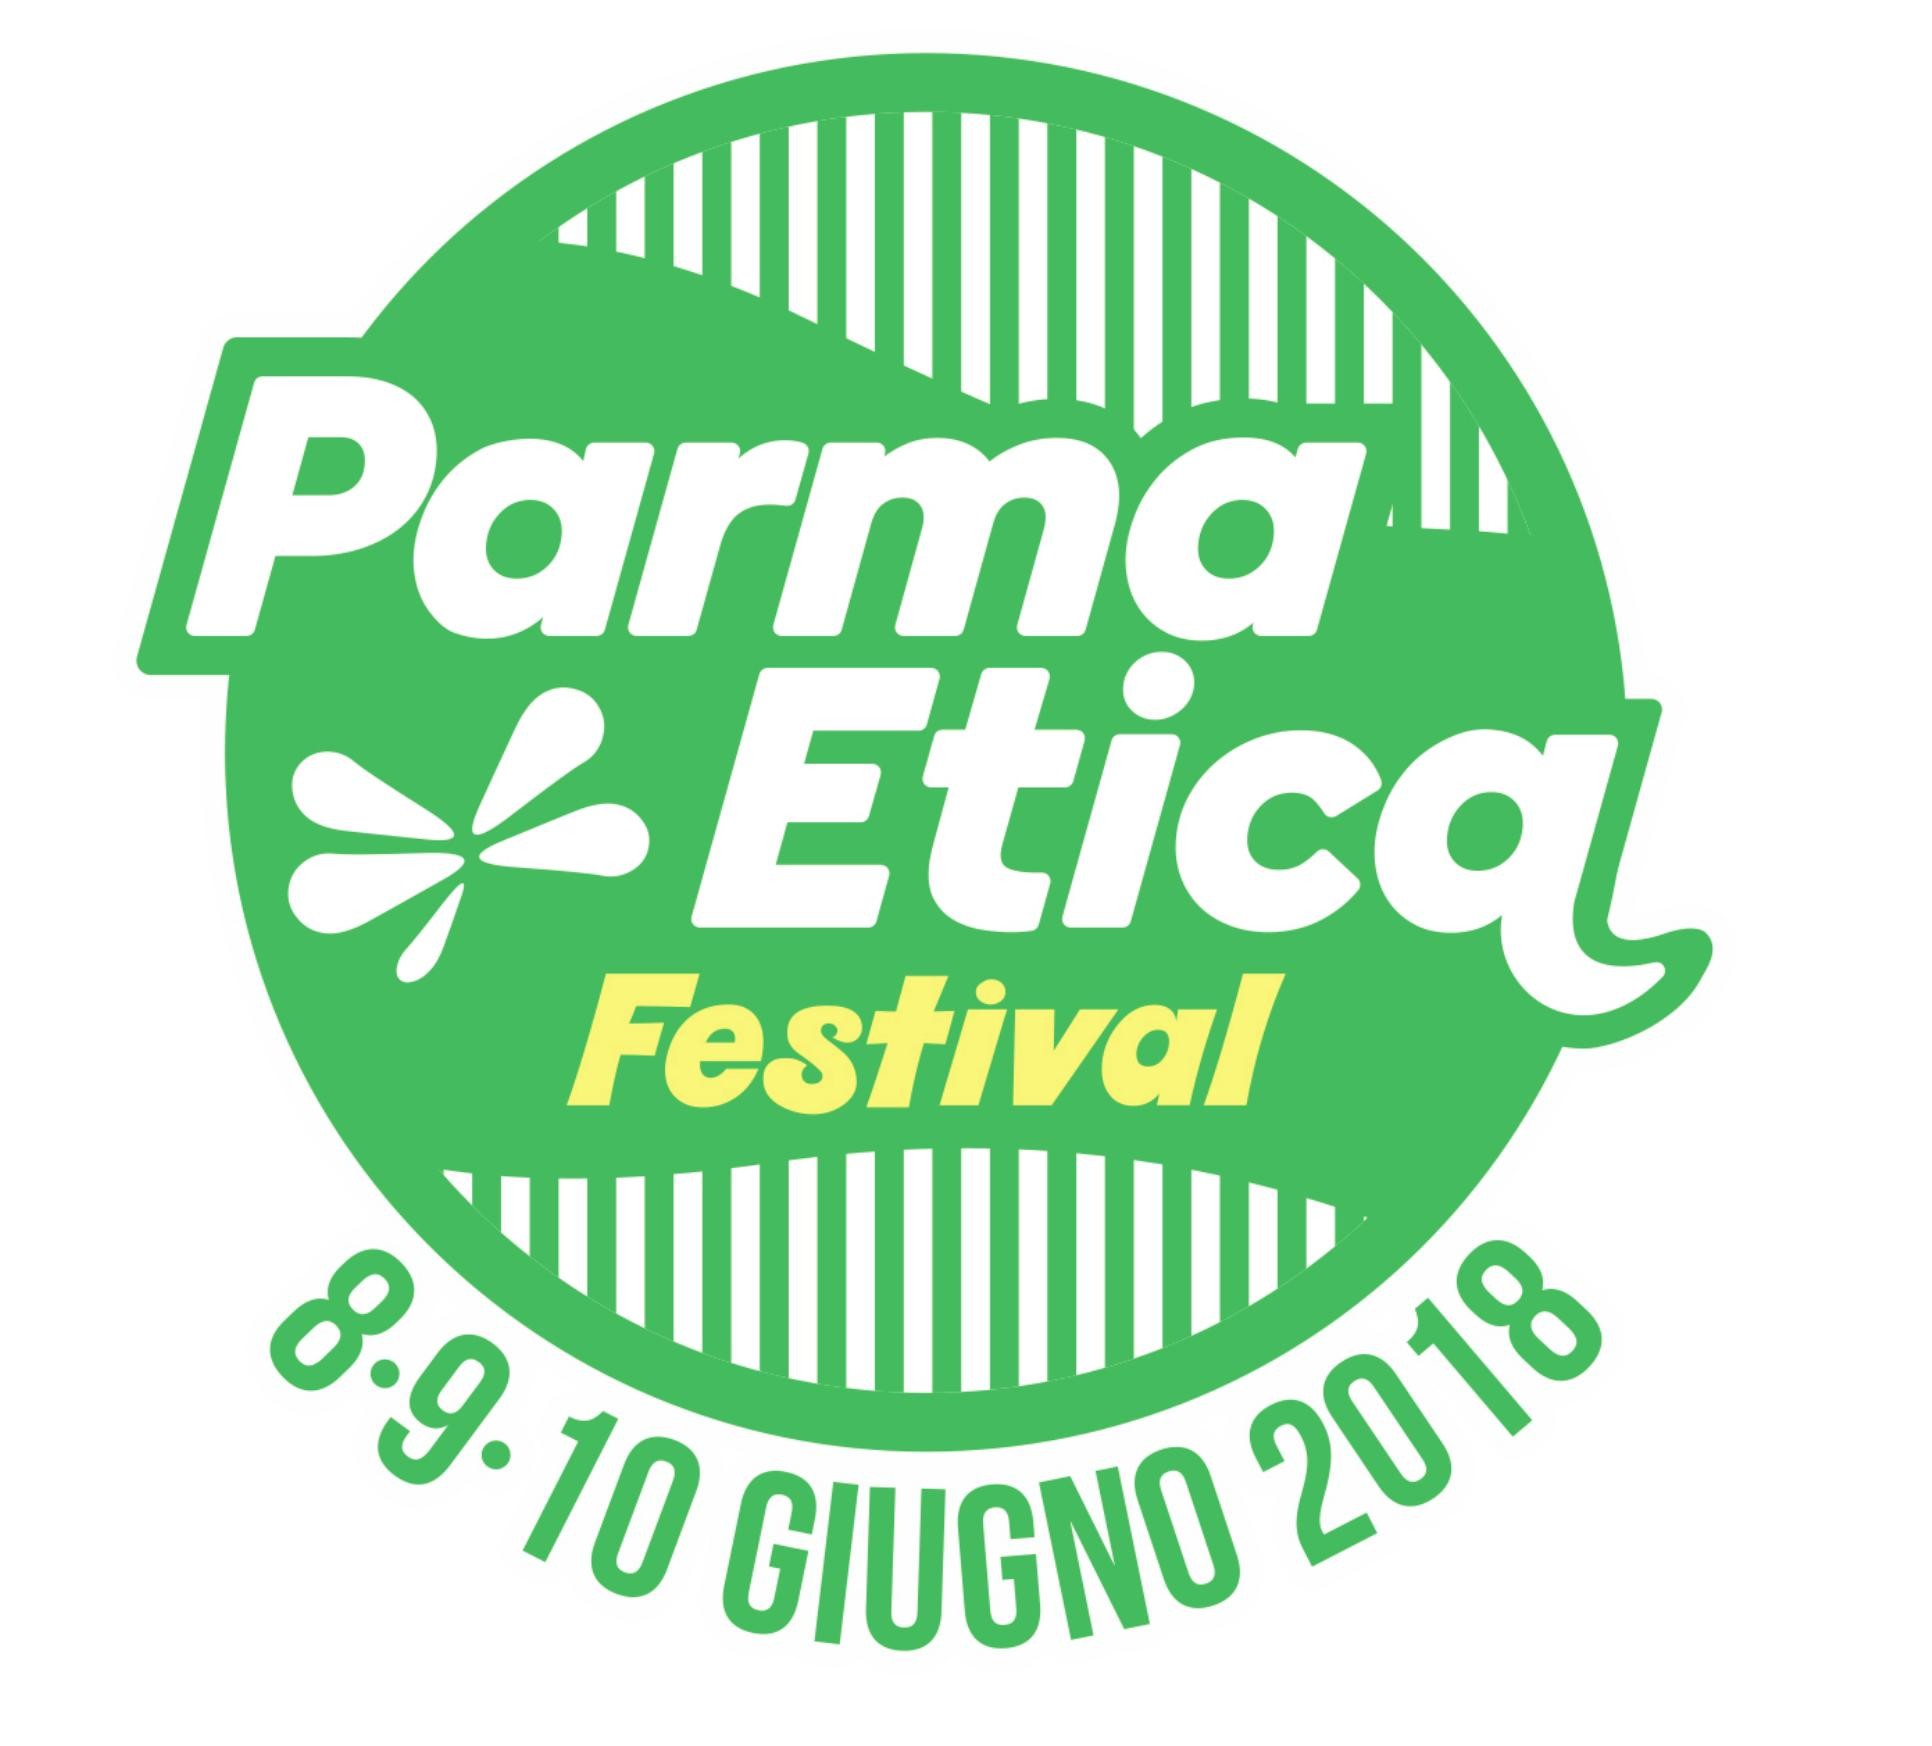 Parma etica festival